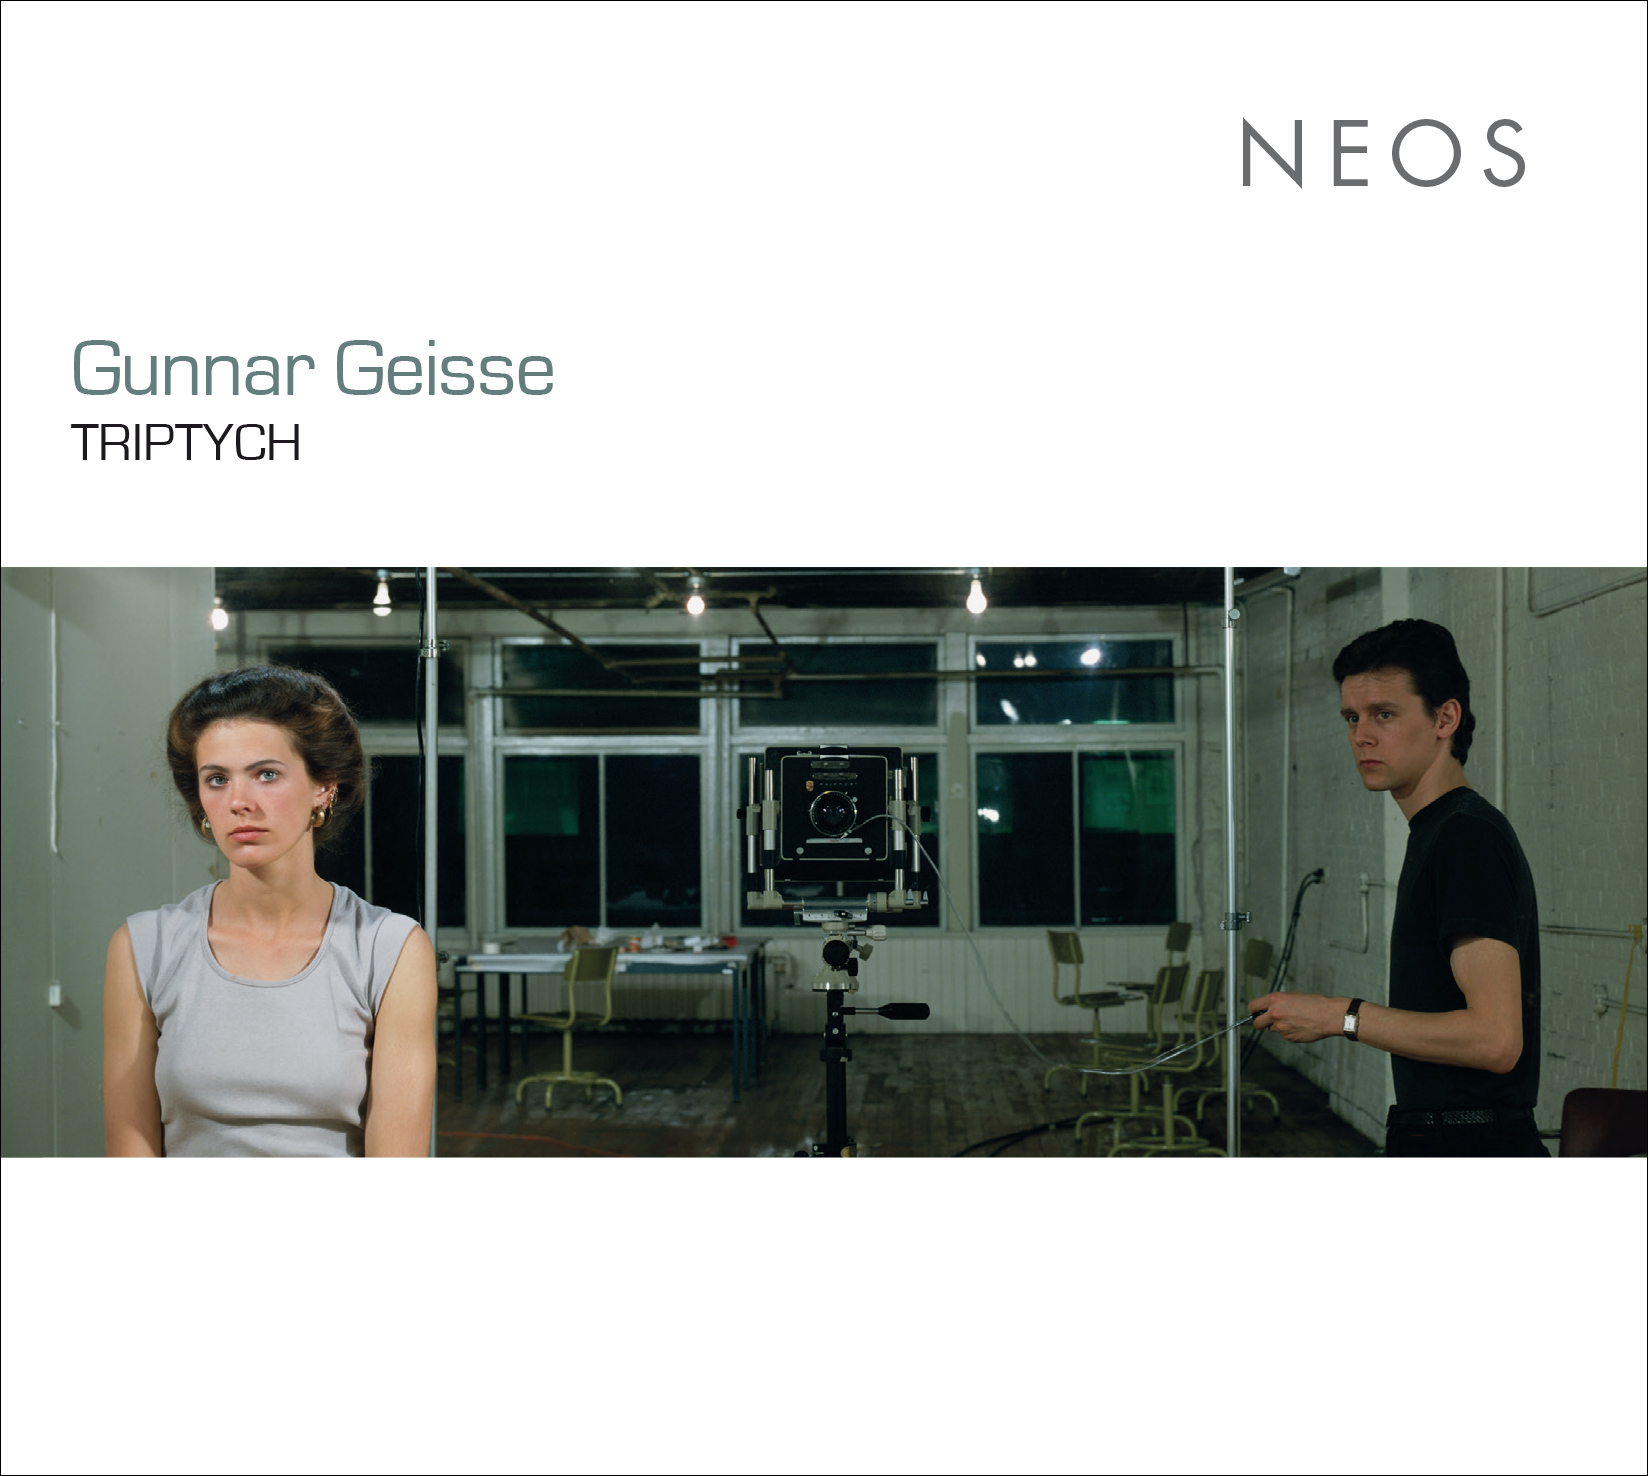 Novedades discográficas: «Gunnar Geisse TRIPTYCH» editado en Neos Music